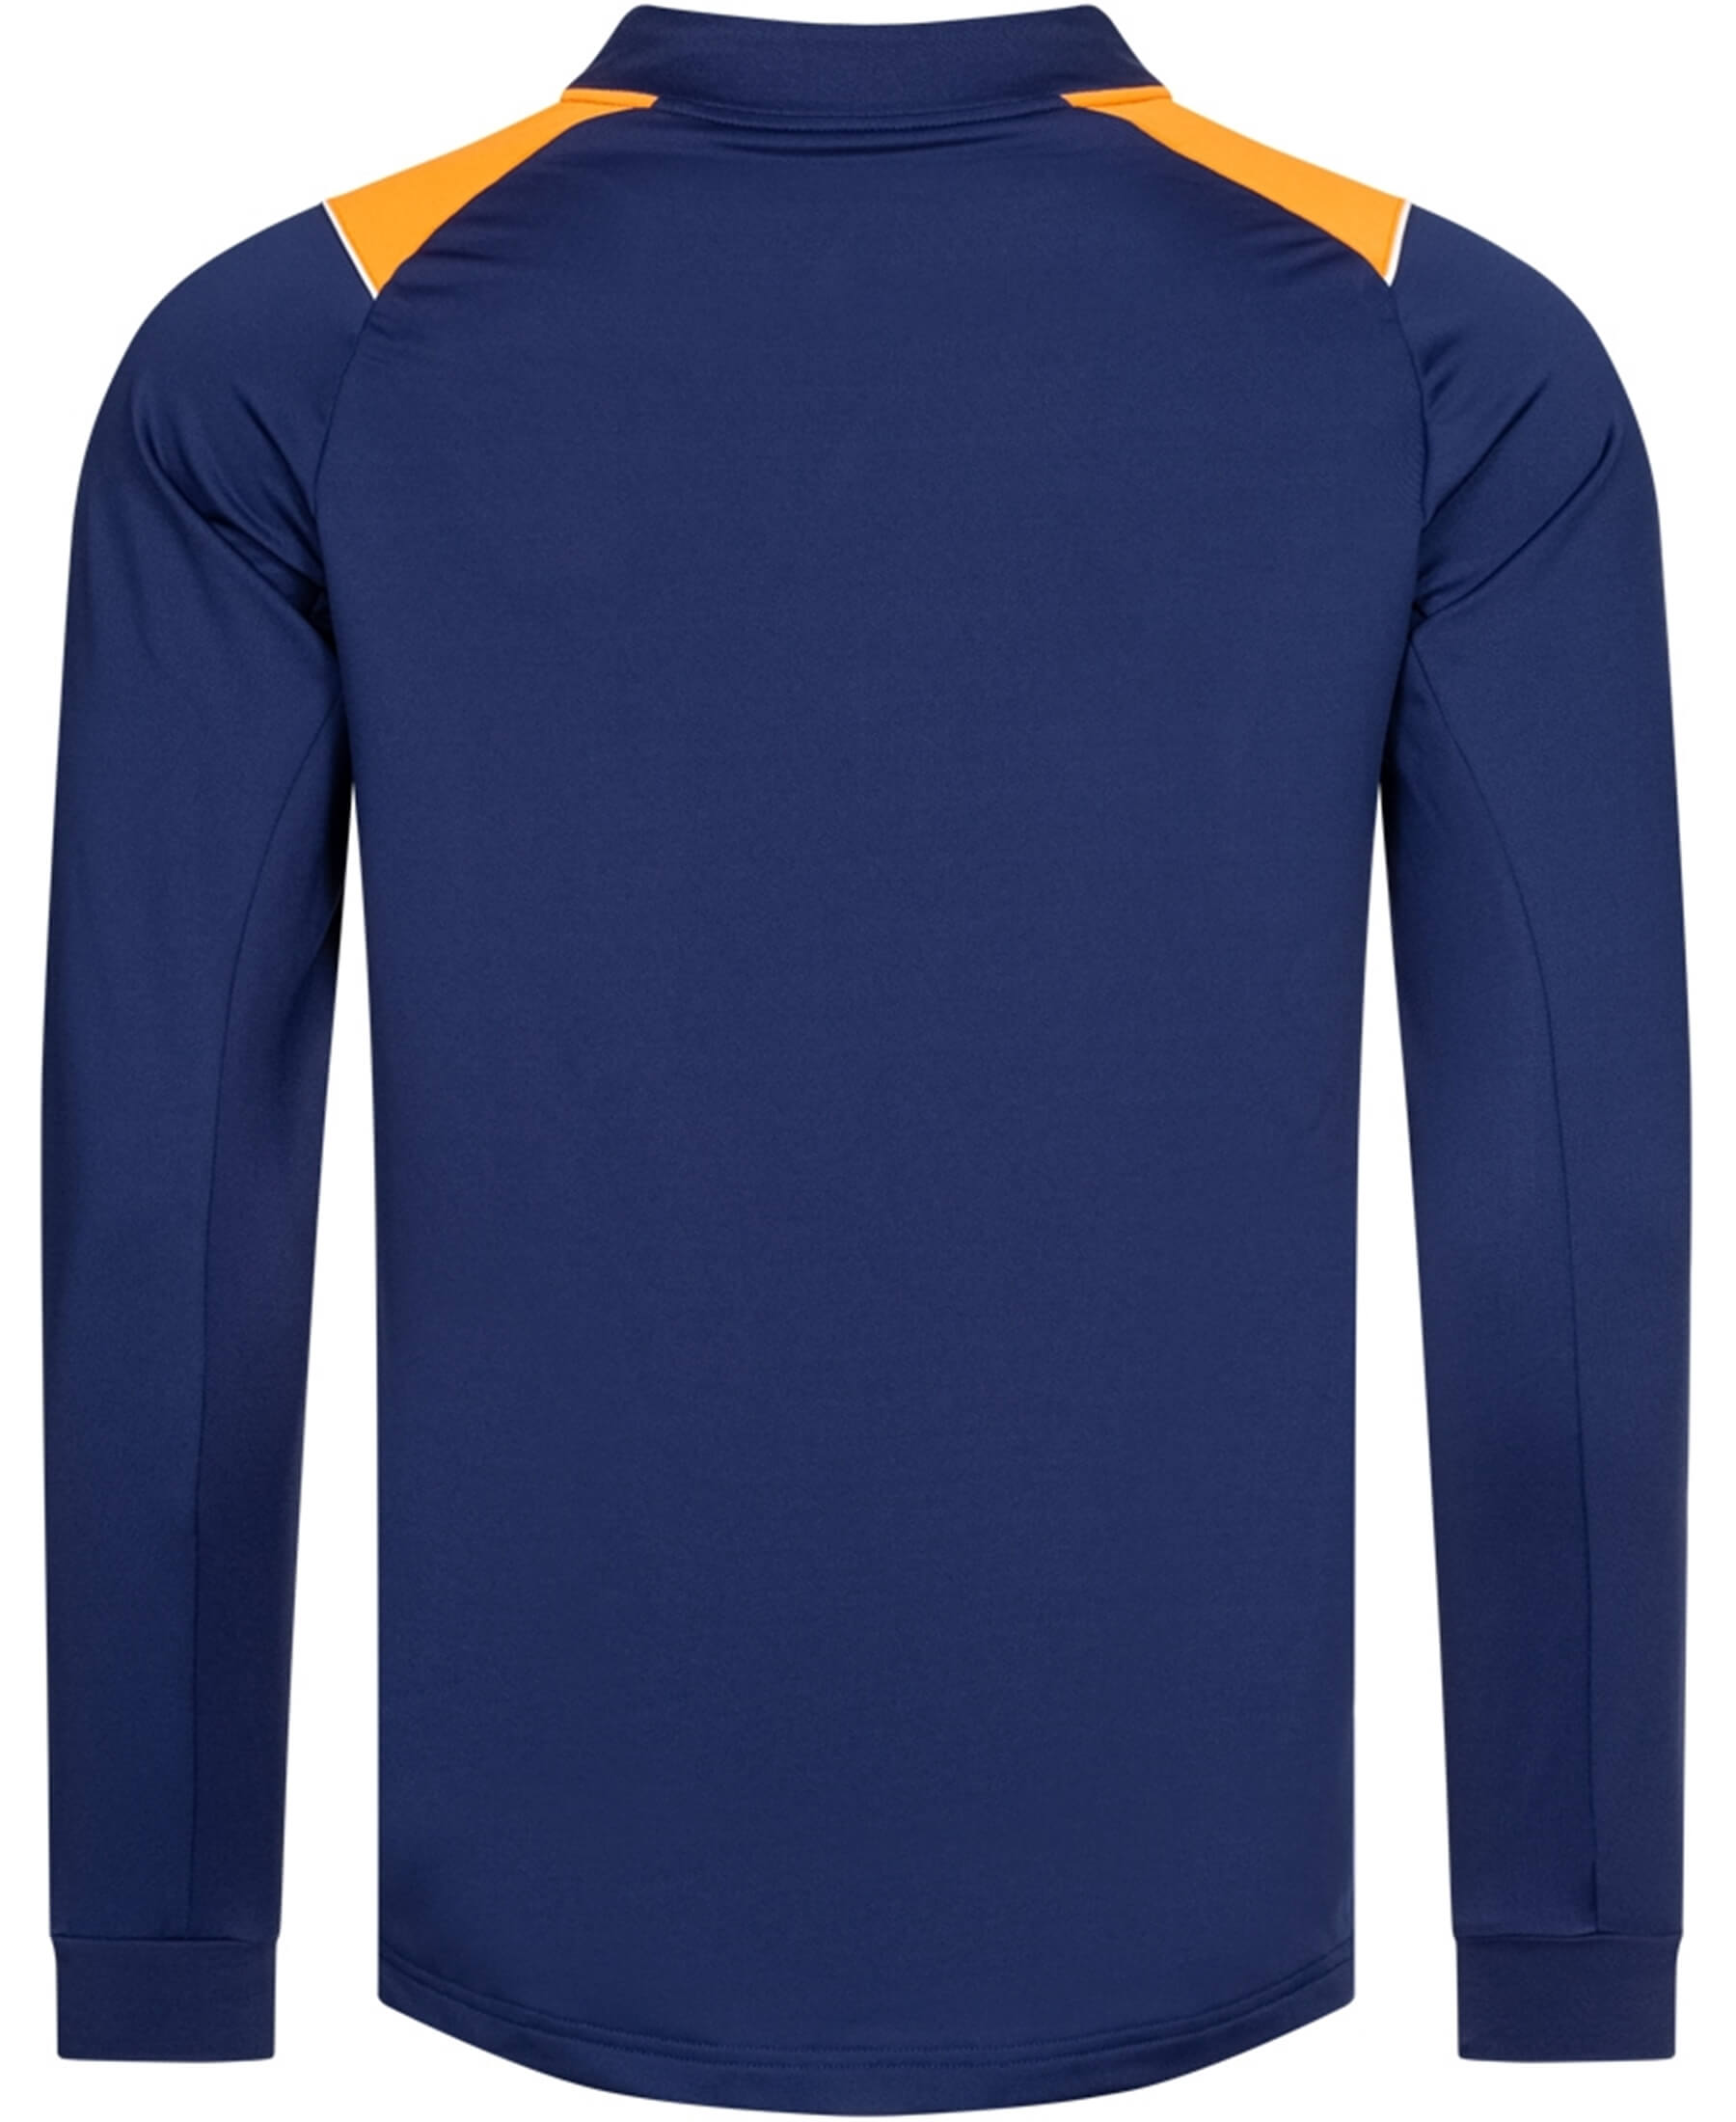 Entdecken Sie das offizielle Castore Glasgow Rangers FC 1/4-Zip Sweatshirt in Marineblau und Orange (Herstellernummer: TM0511-Navy Orange) bei SHOP4TEAMSPORT. Dieses hochwertige Sweatshirt bietet besten Tragekomfort und Stil für Fans. Zeigen Sie Ihre Unterstützung im Stadion und im Alltag. Ein Must-Have für jeden Rangers FC-Anhänger.